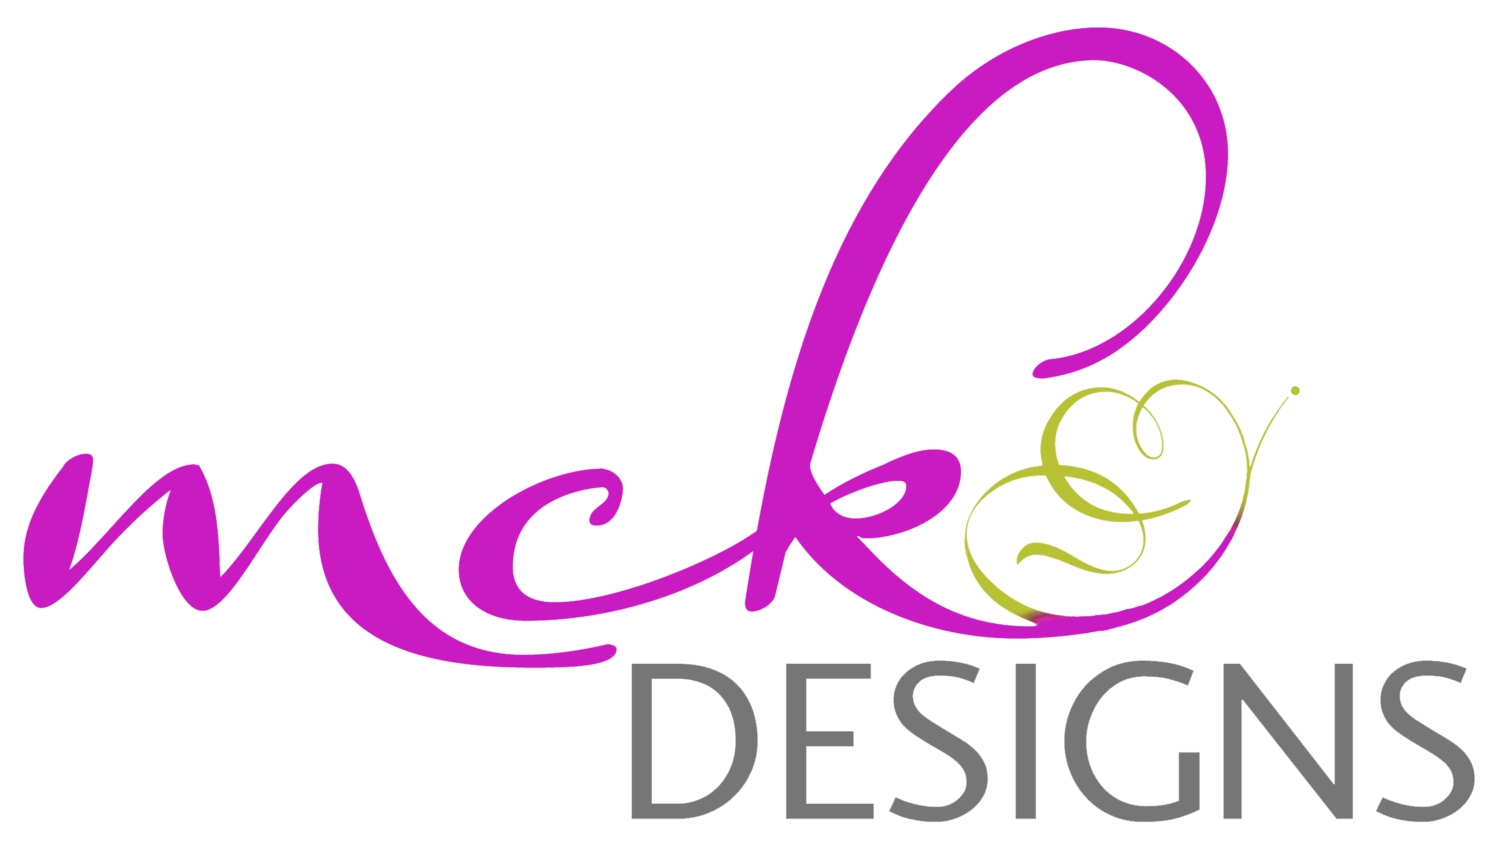 MCK Designs